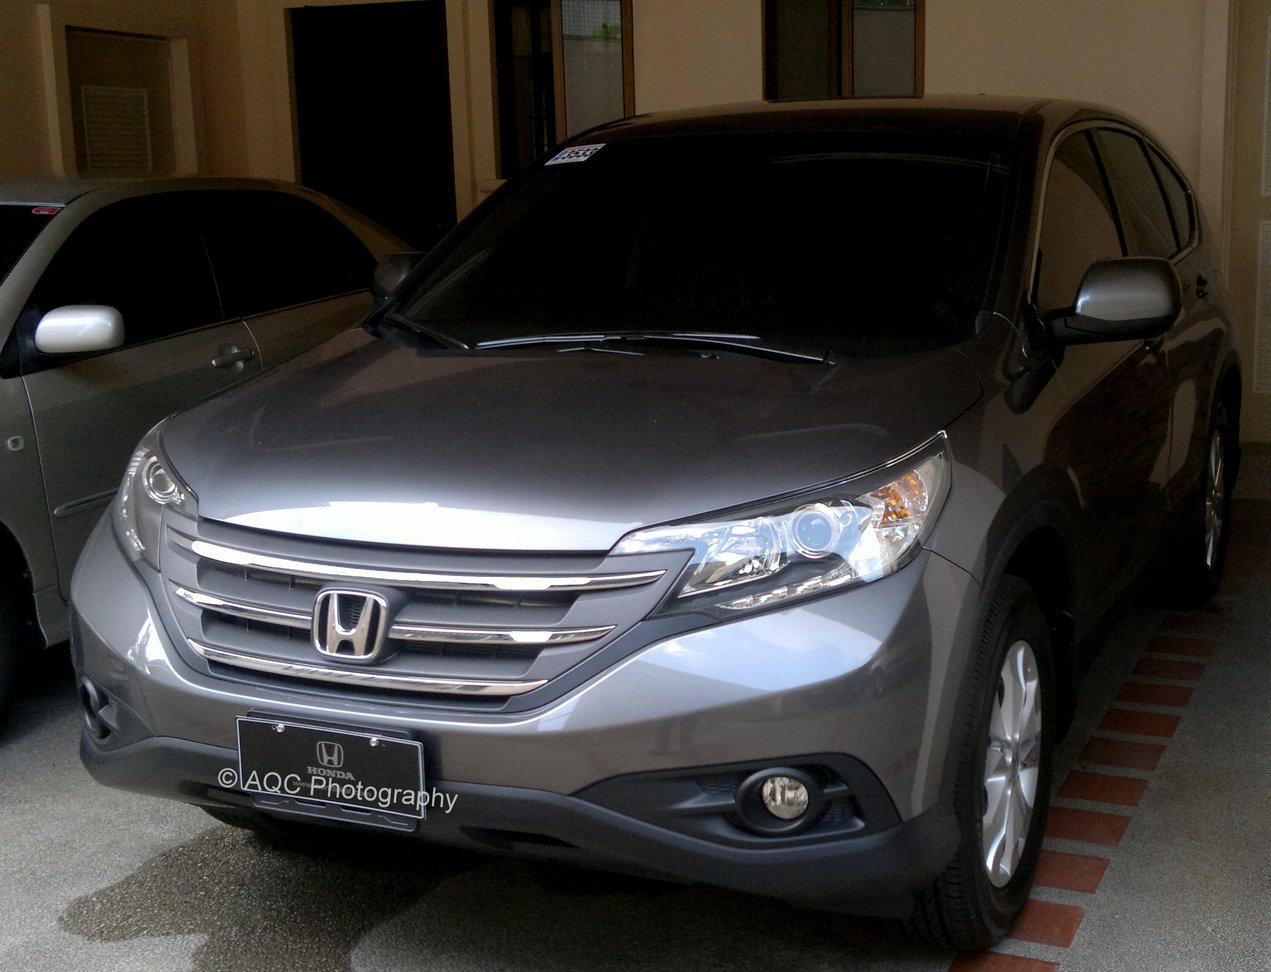 Honda CRV 2012 Manila - Interior and Exterior Photos ~ Cheftonio's Blog